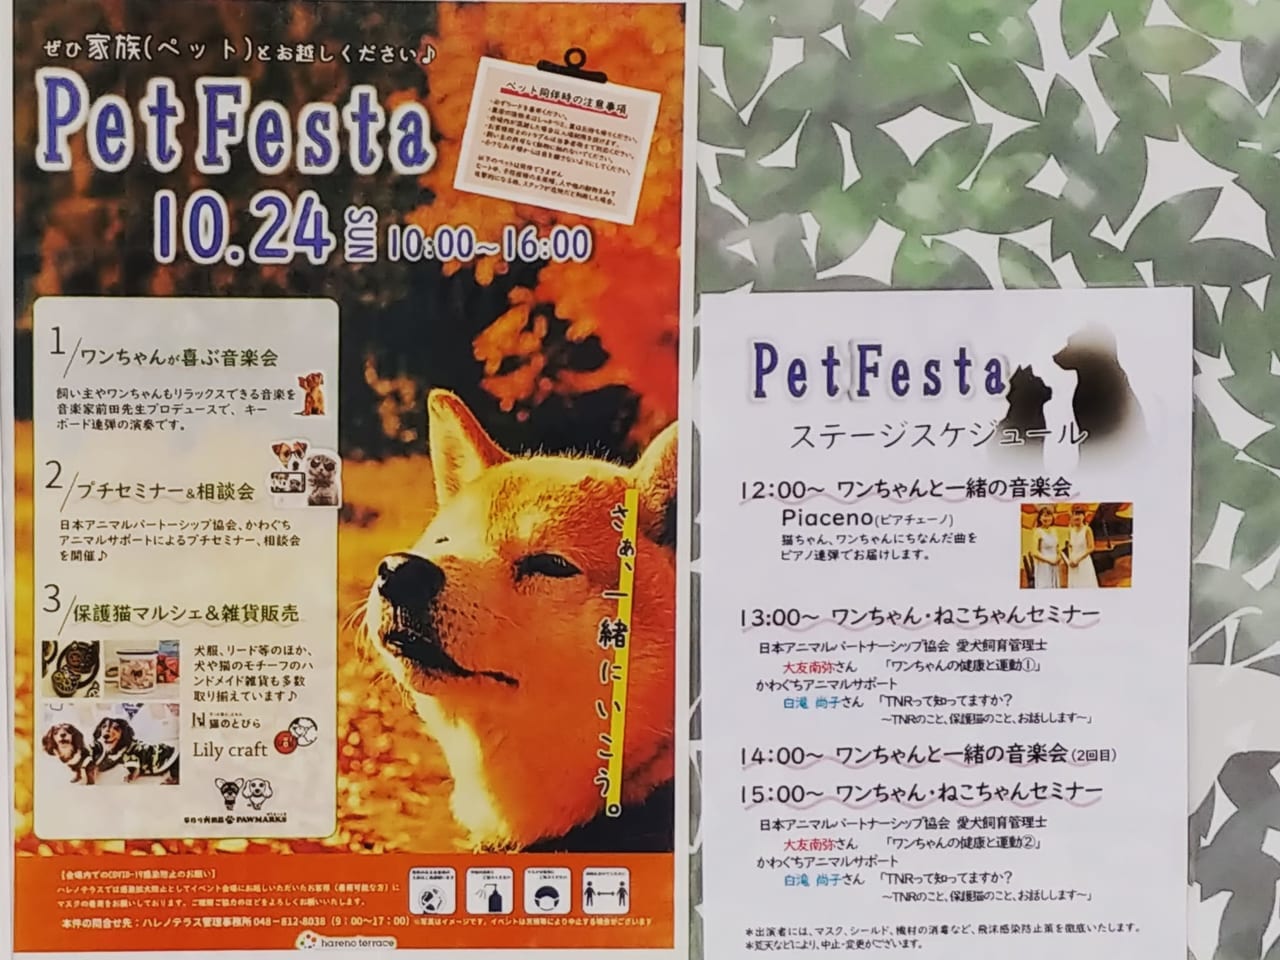 ハレノテラス｢Pet Festa｣告知